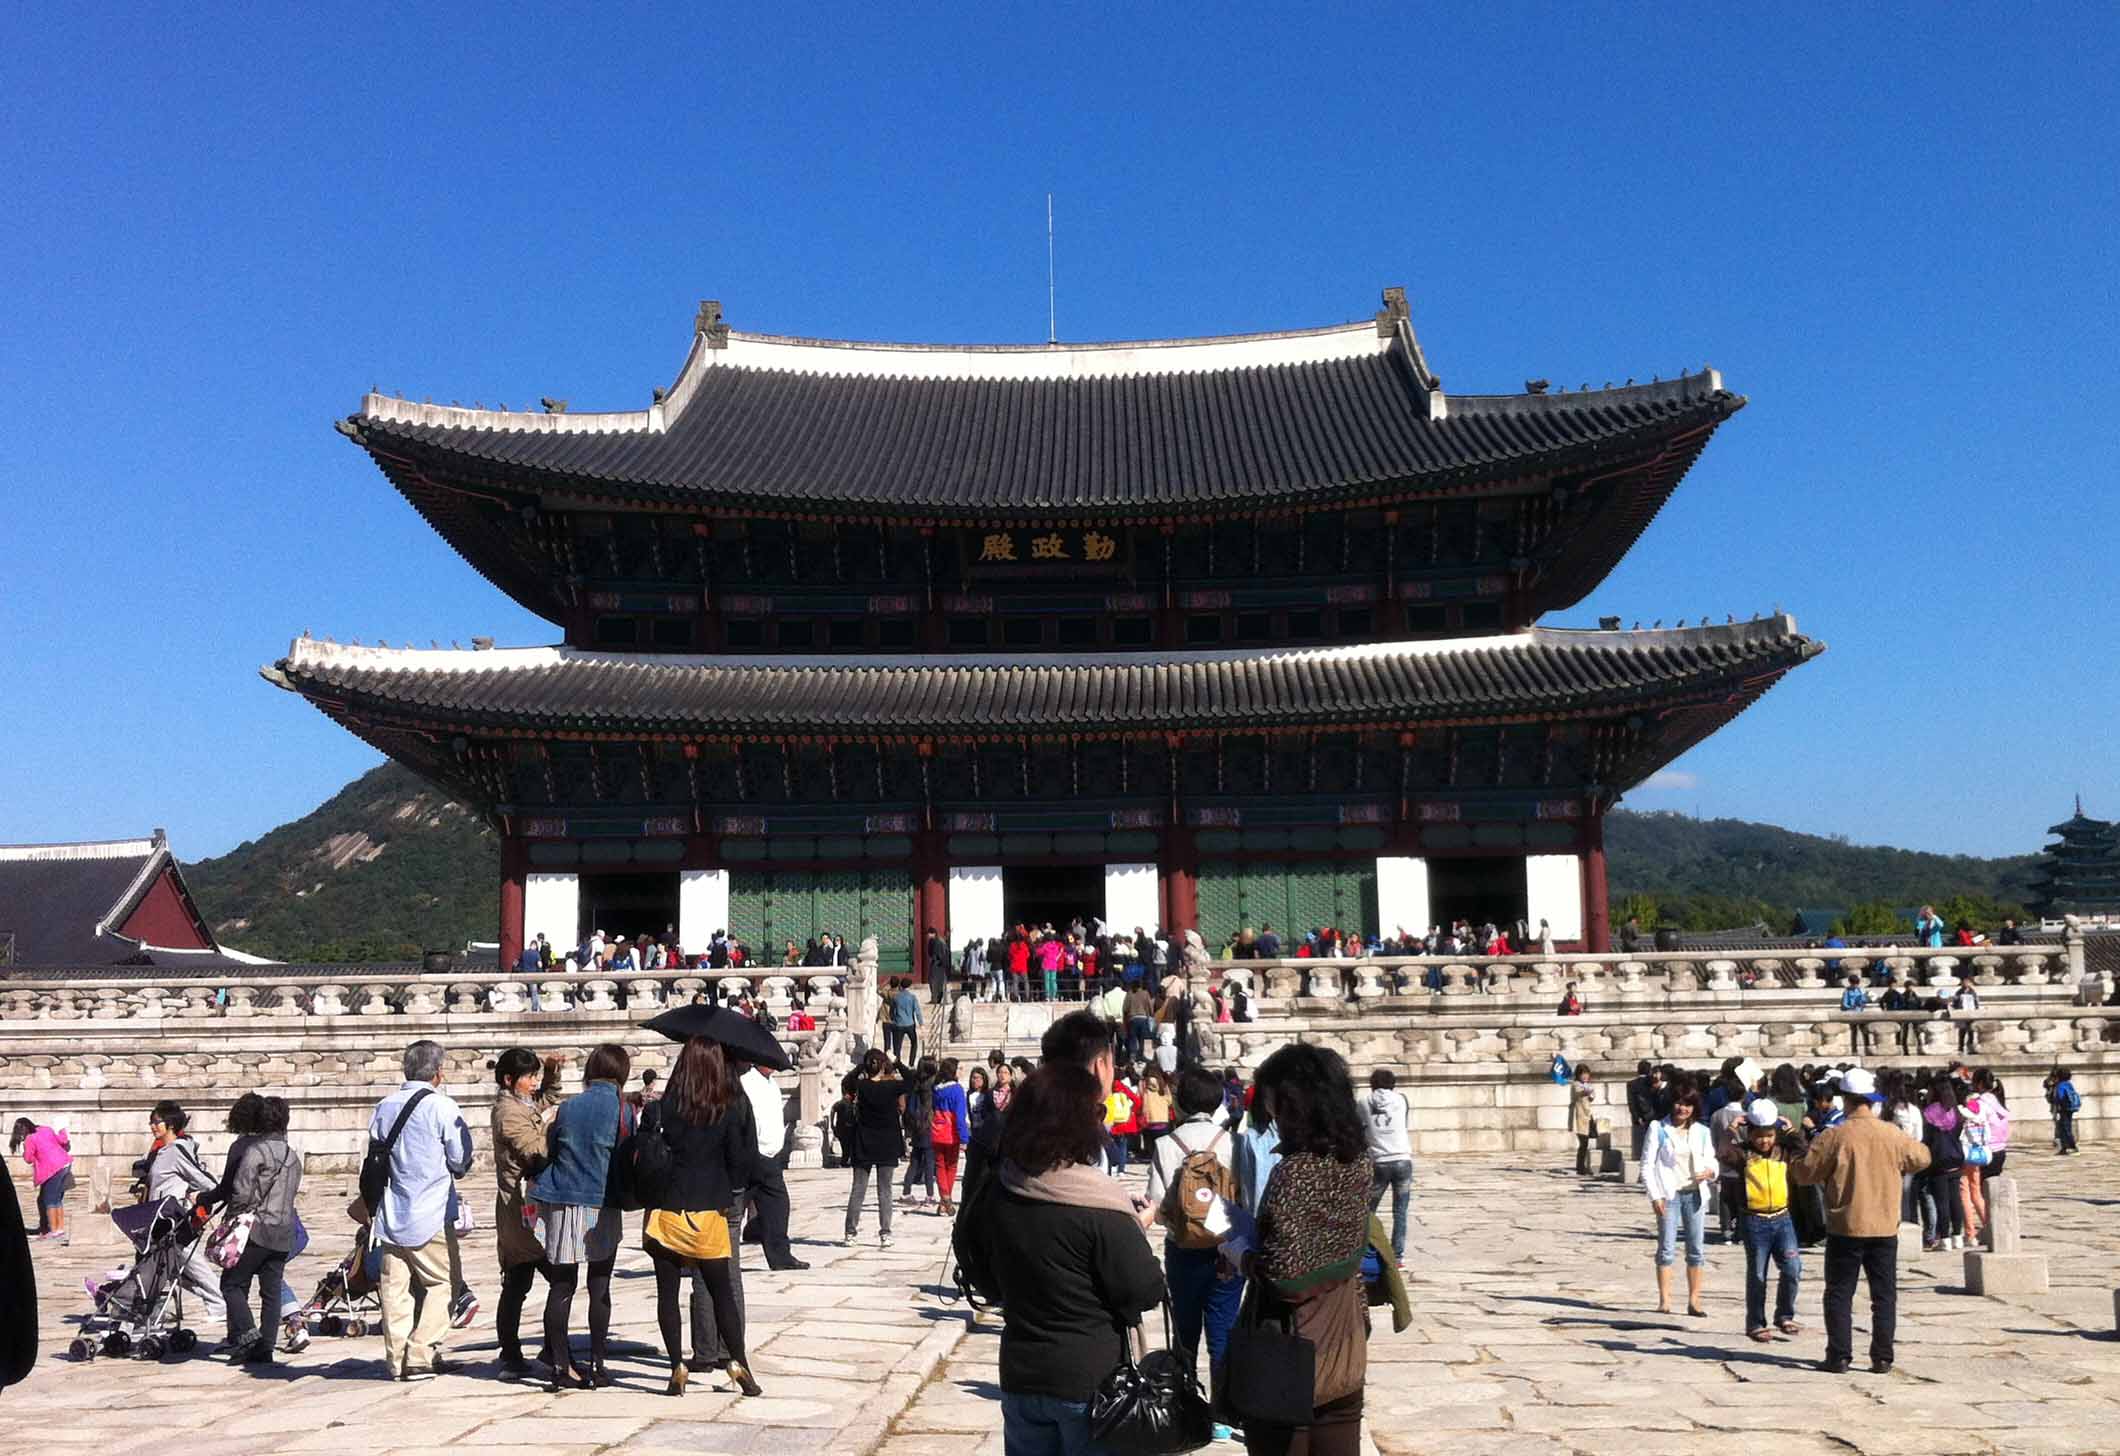 Du lịch Hàn Quốc: Điểm du lịch được yêu thích Hàn Quốc